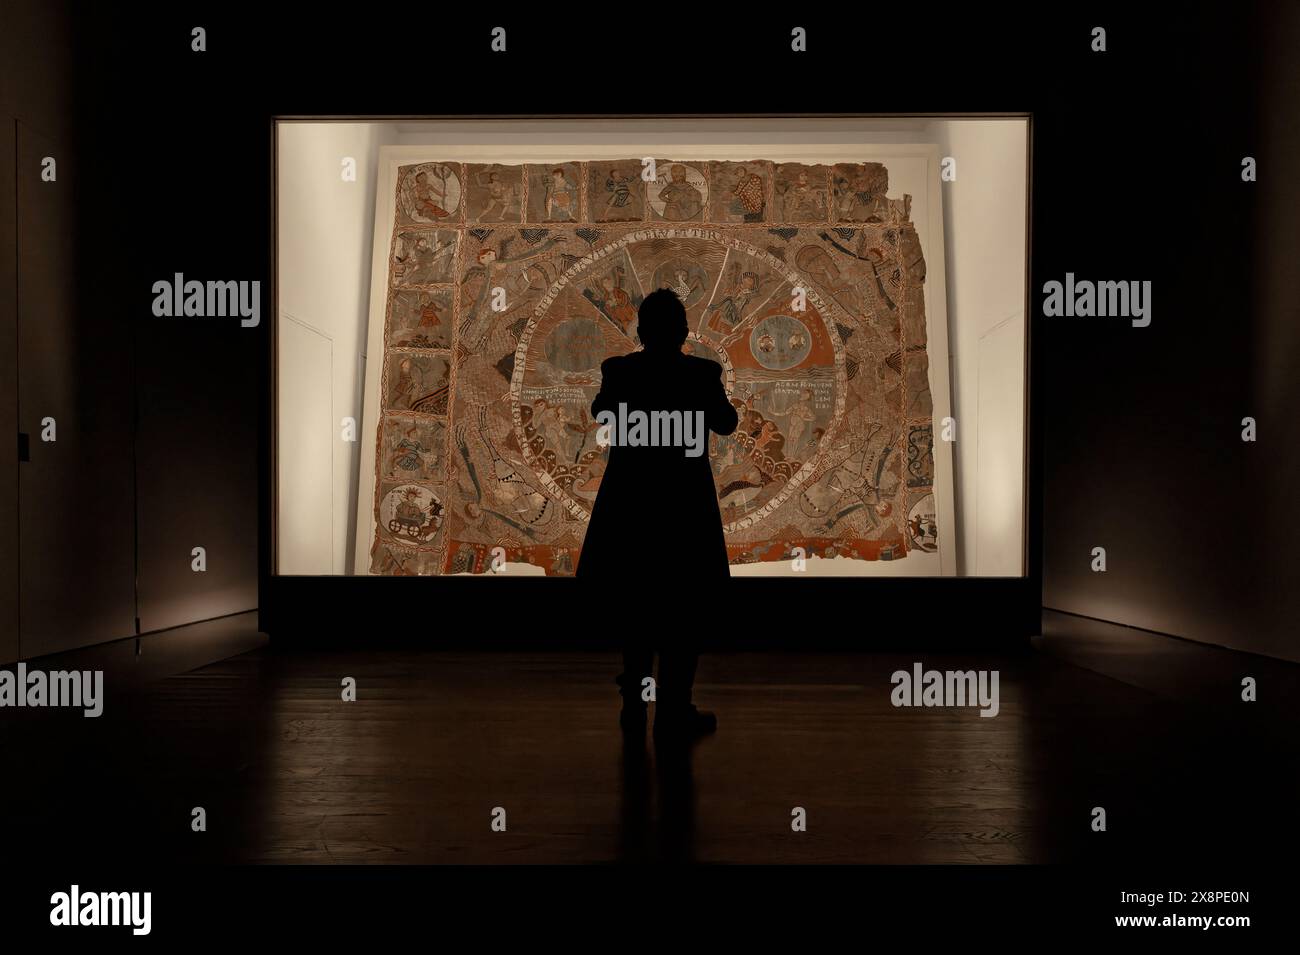 Personne se tient devant la tapisserie illuminée de la création dans le musée de la cathédrale sainte-marie. Admirez ses œuvres d'art médiévales complexes. Banque D'Images